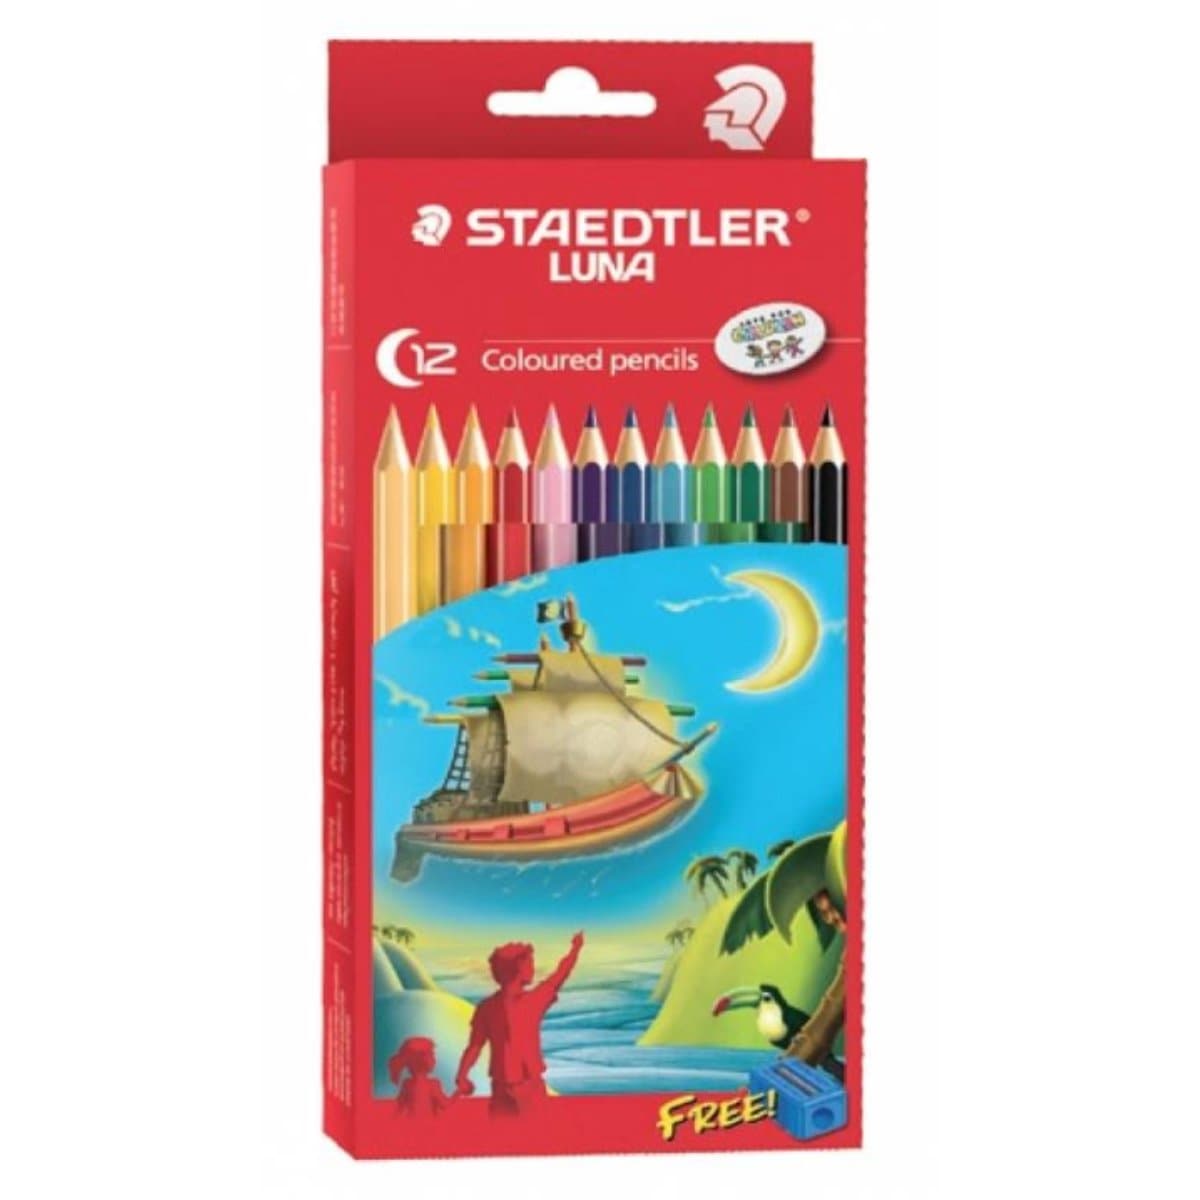 Staedtler Luna Colored Pencils, 12/pack